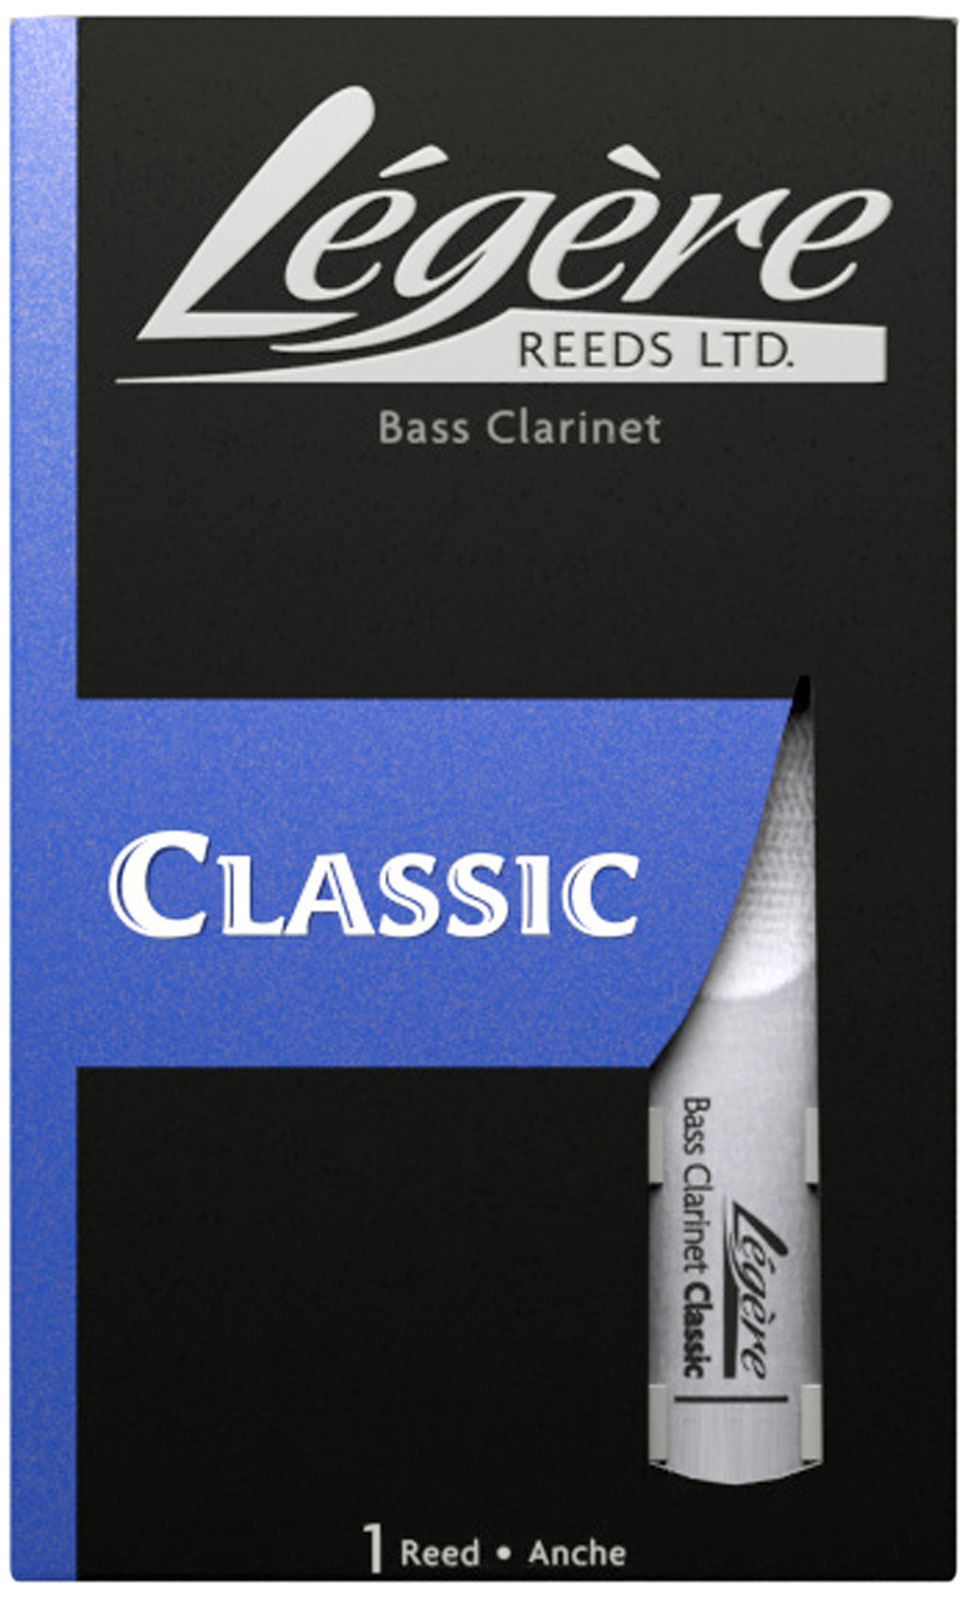 LEGERE CLASSIC 2 - CLAR BASSE